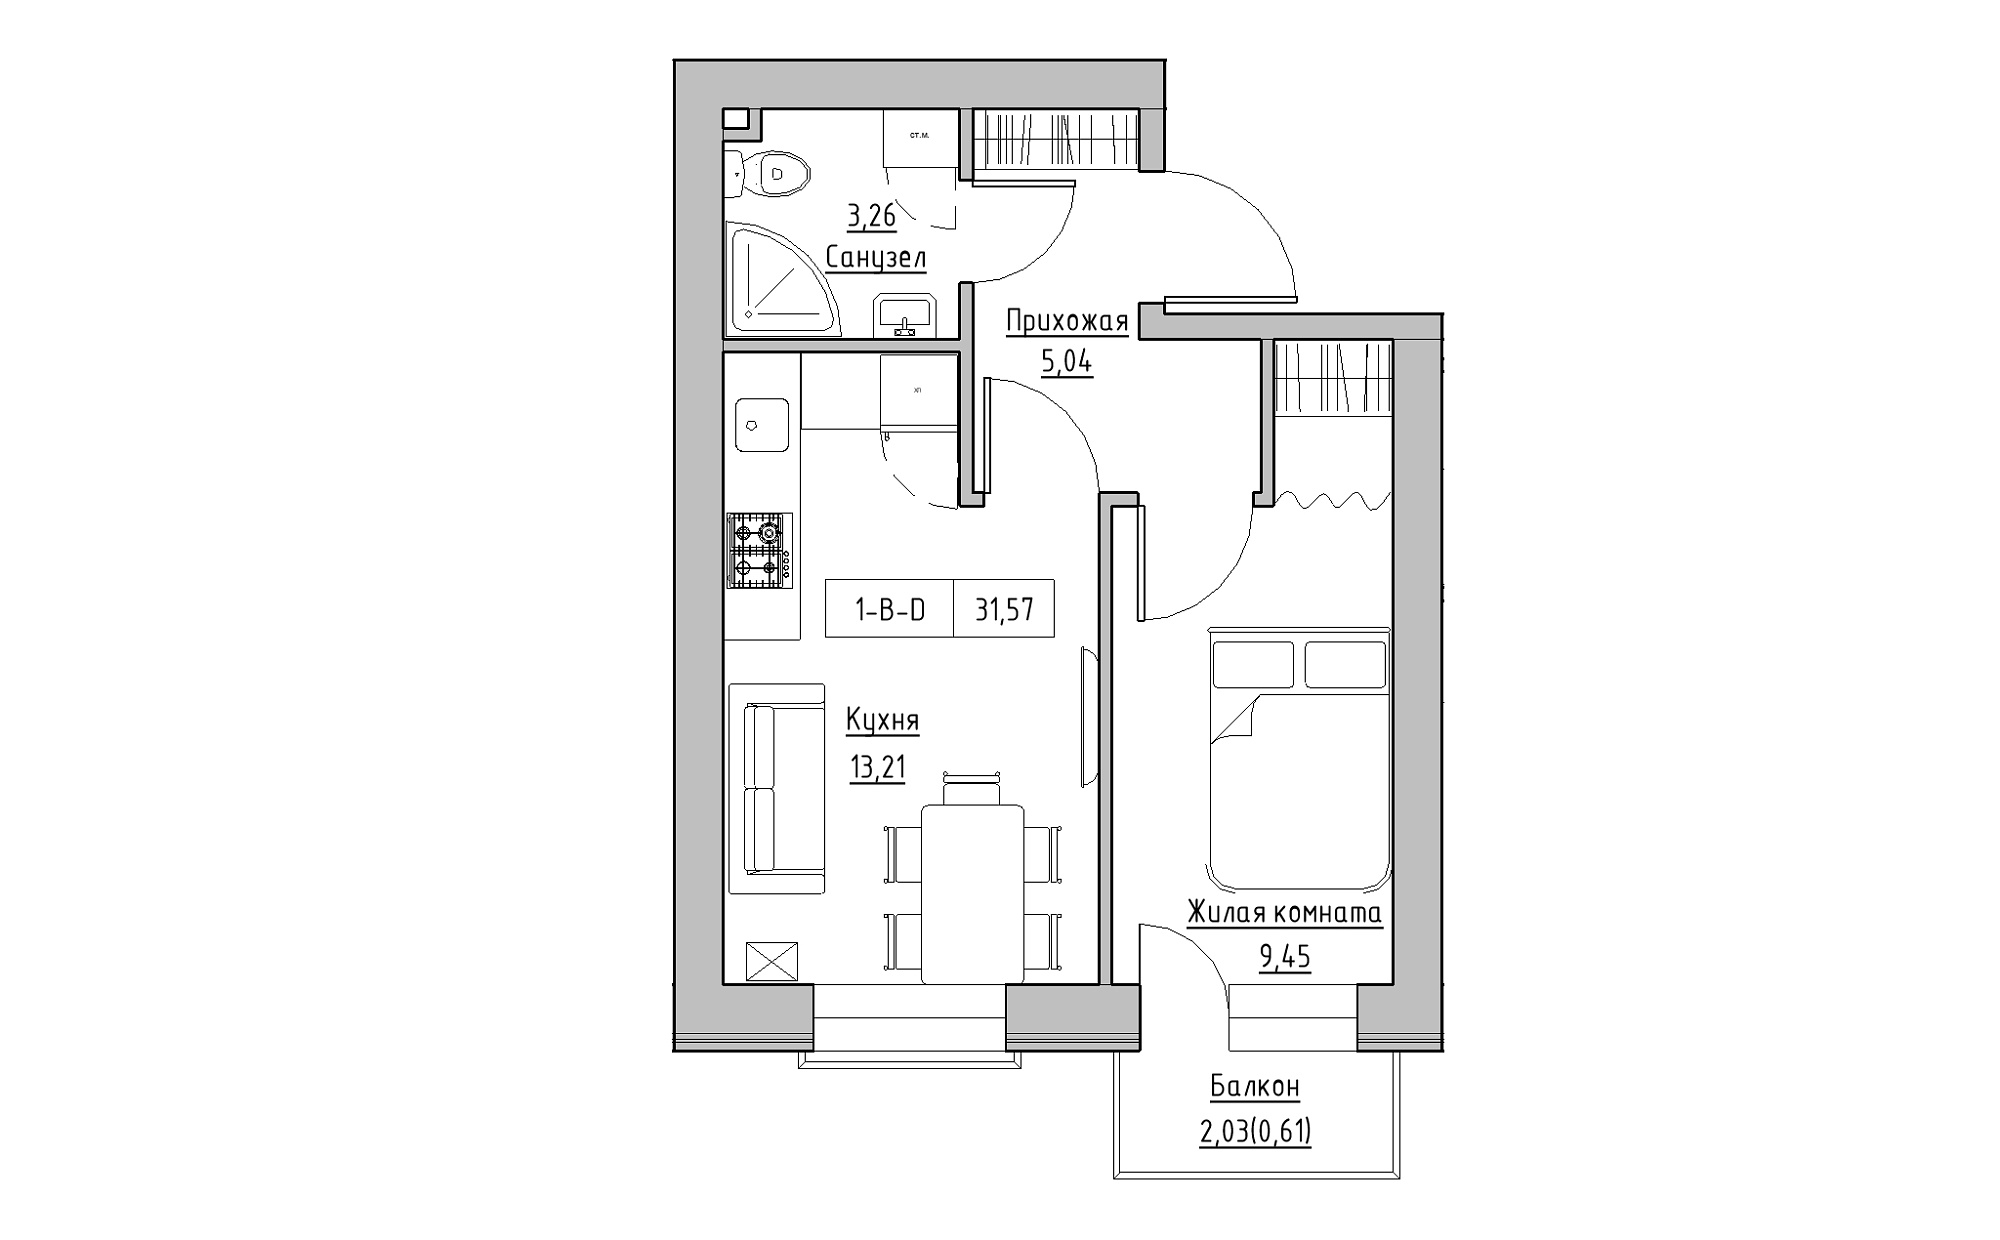 Планировка 1-к квартира площей 31.57м2, KS-022-02/0003.